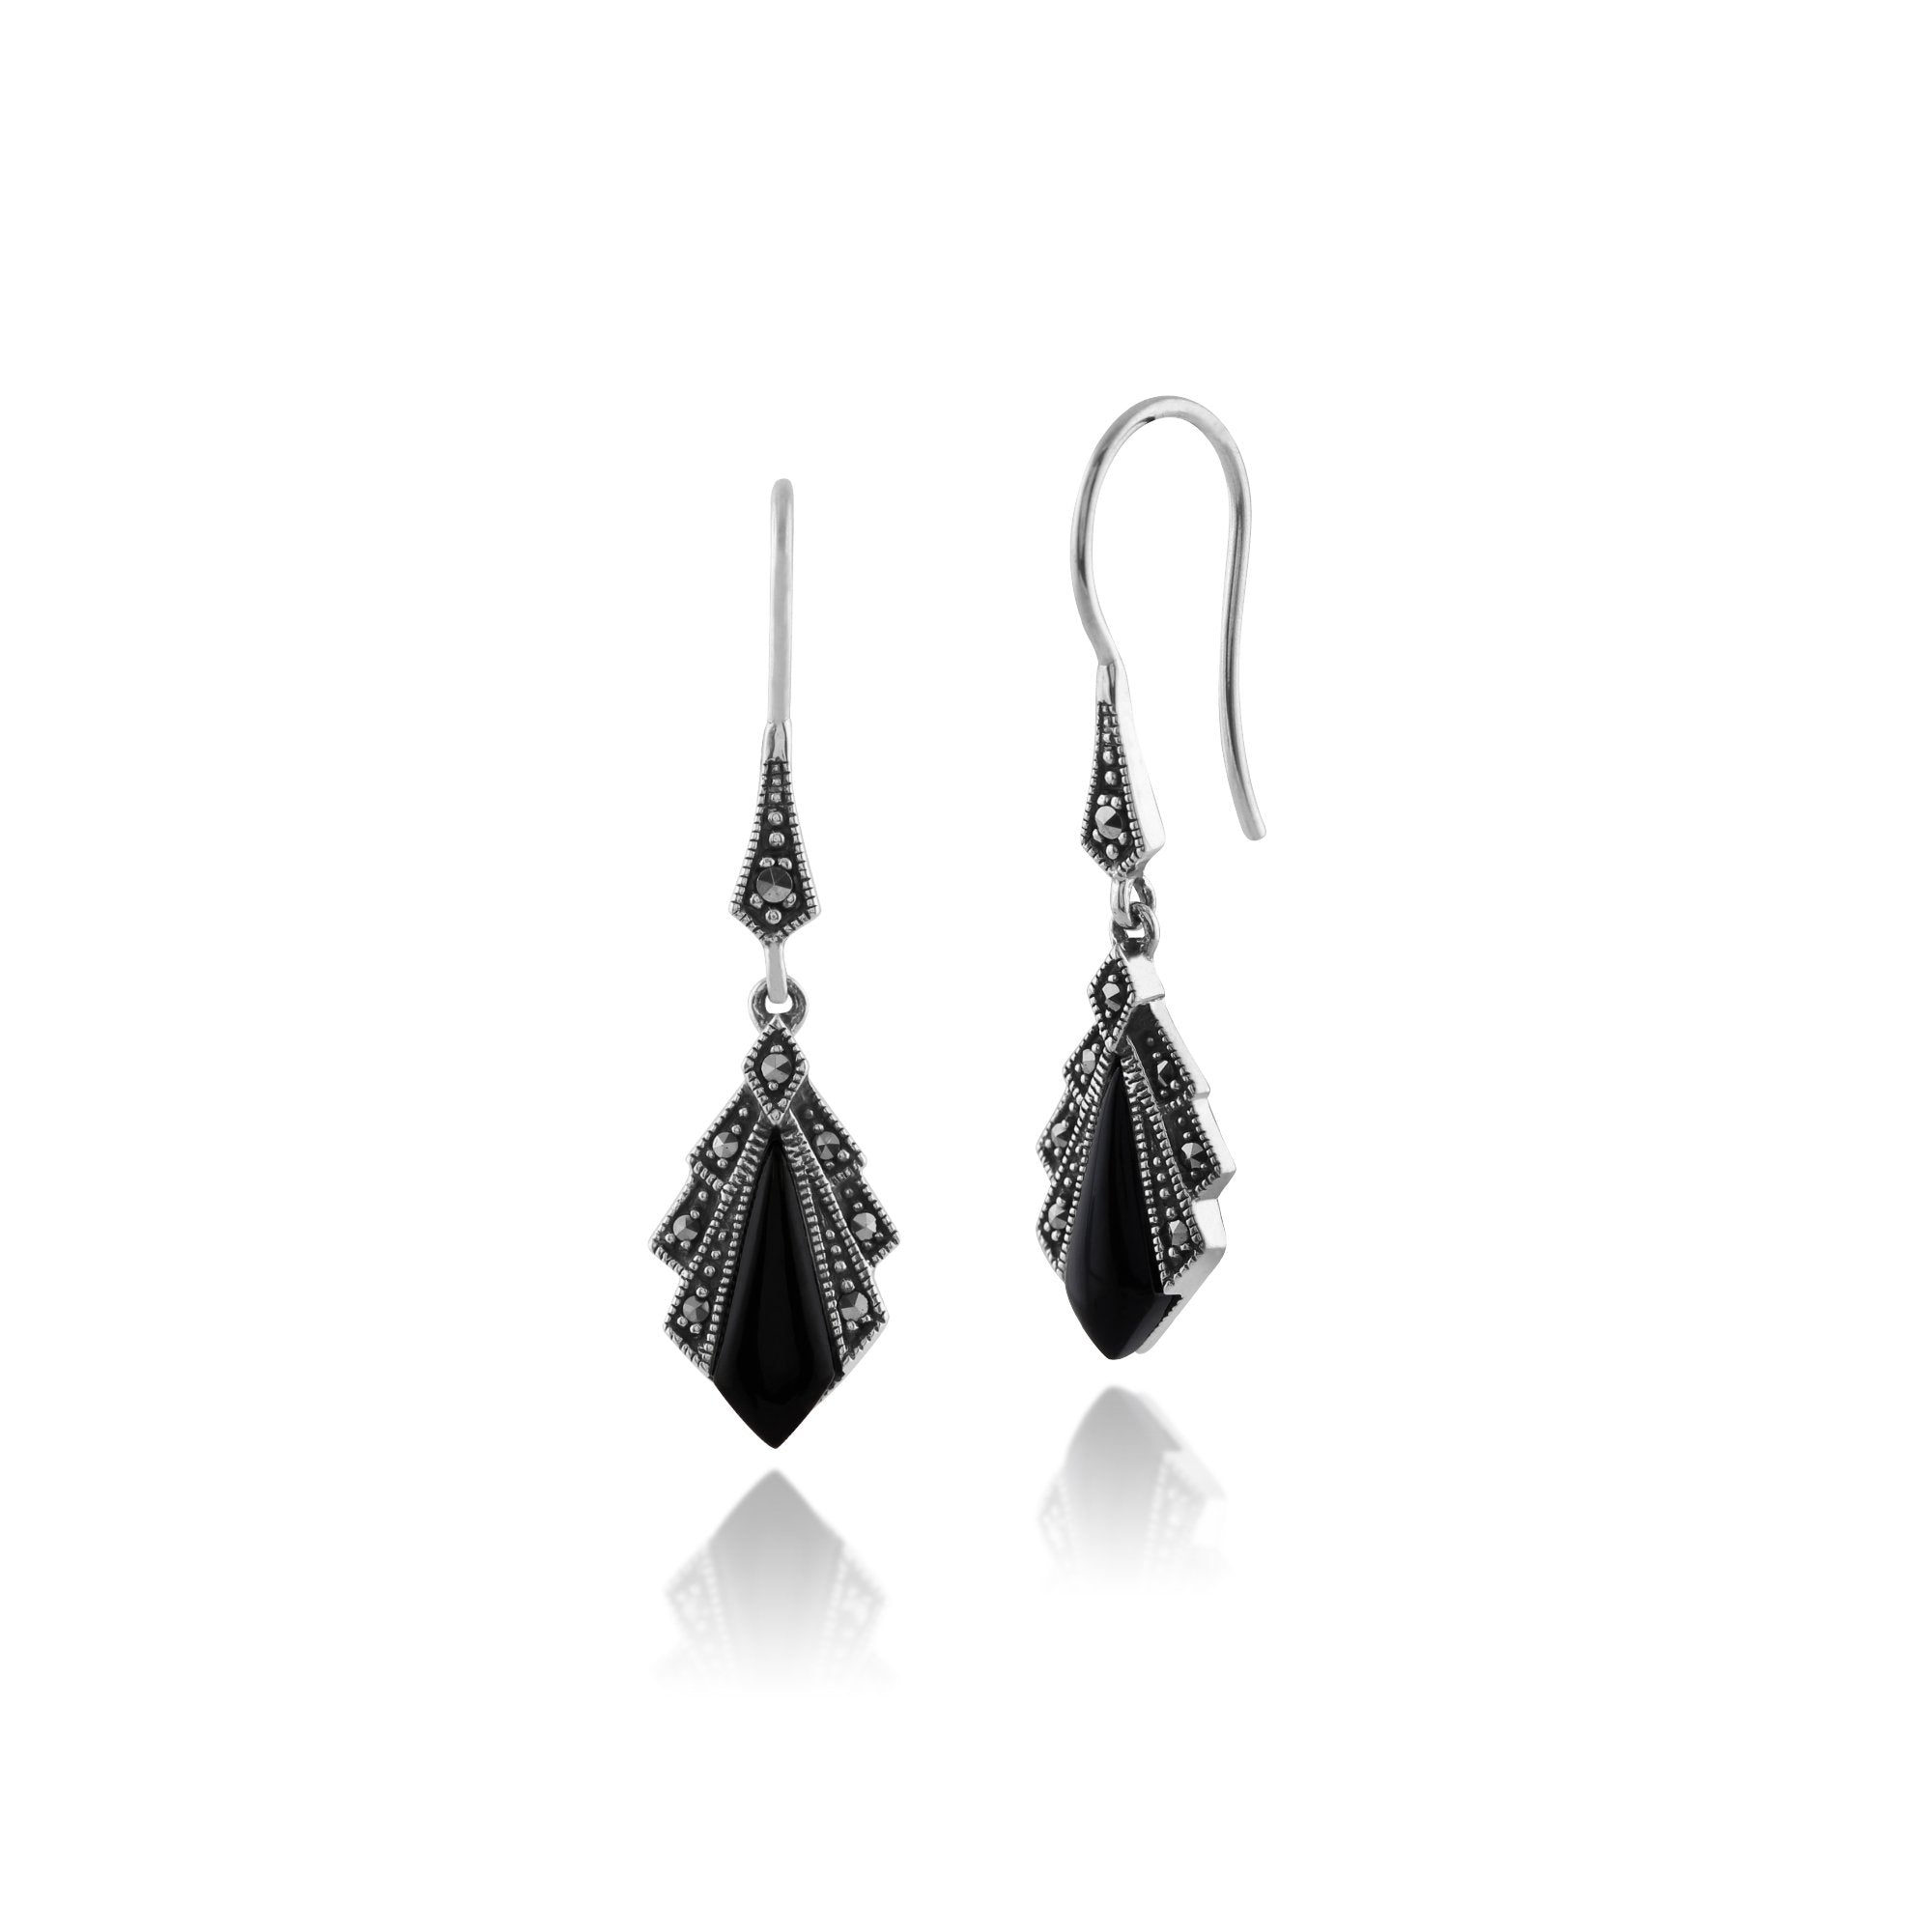 Art Deco Style Diamond Black Onyx & Marcasite Drop Earrings in 925 Sterling Silver